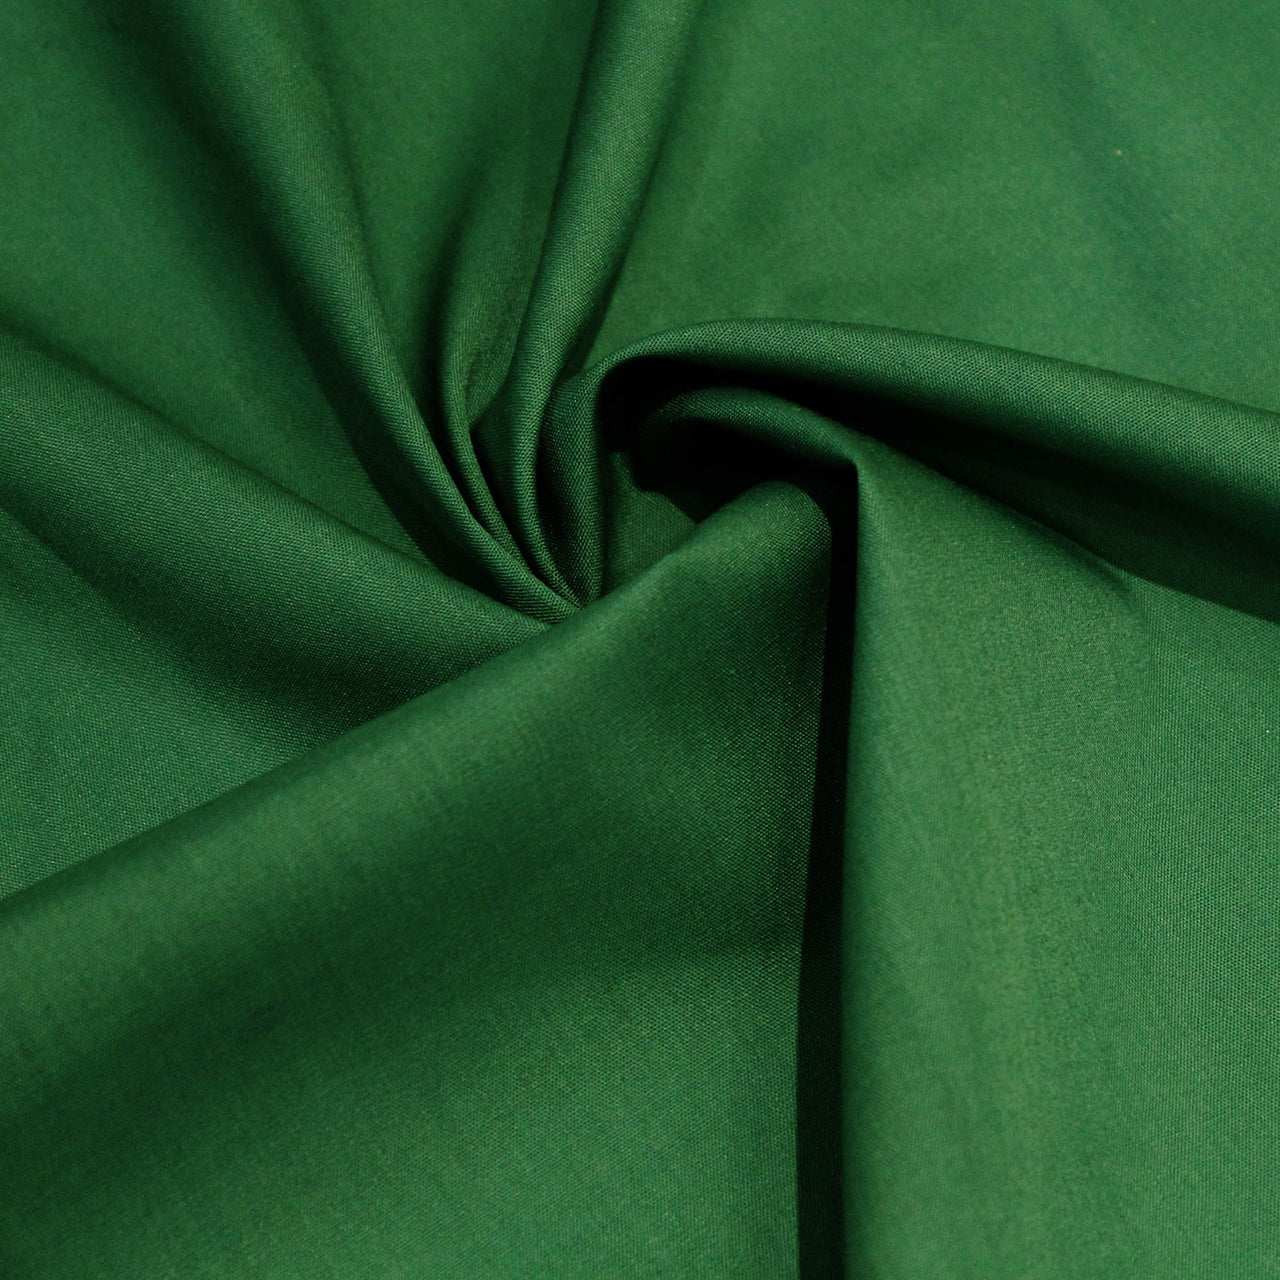 Vert Jade - Poly Coton Uni de Qualité Supérieure - Largeur 114cm